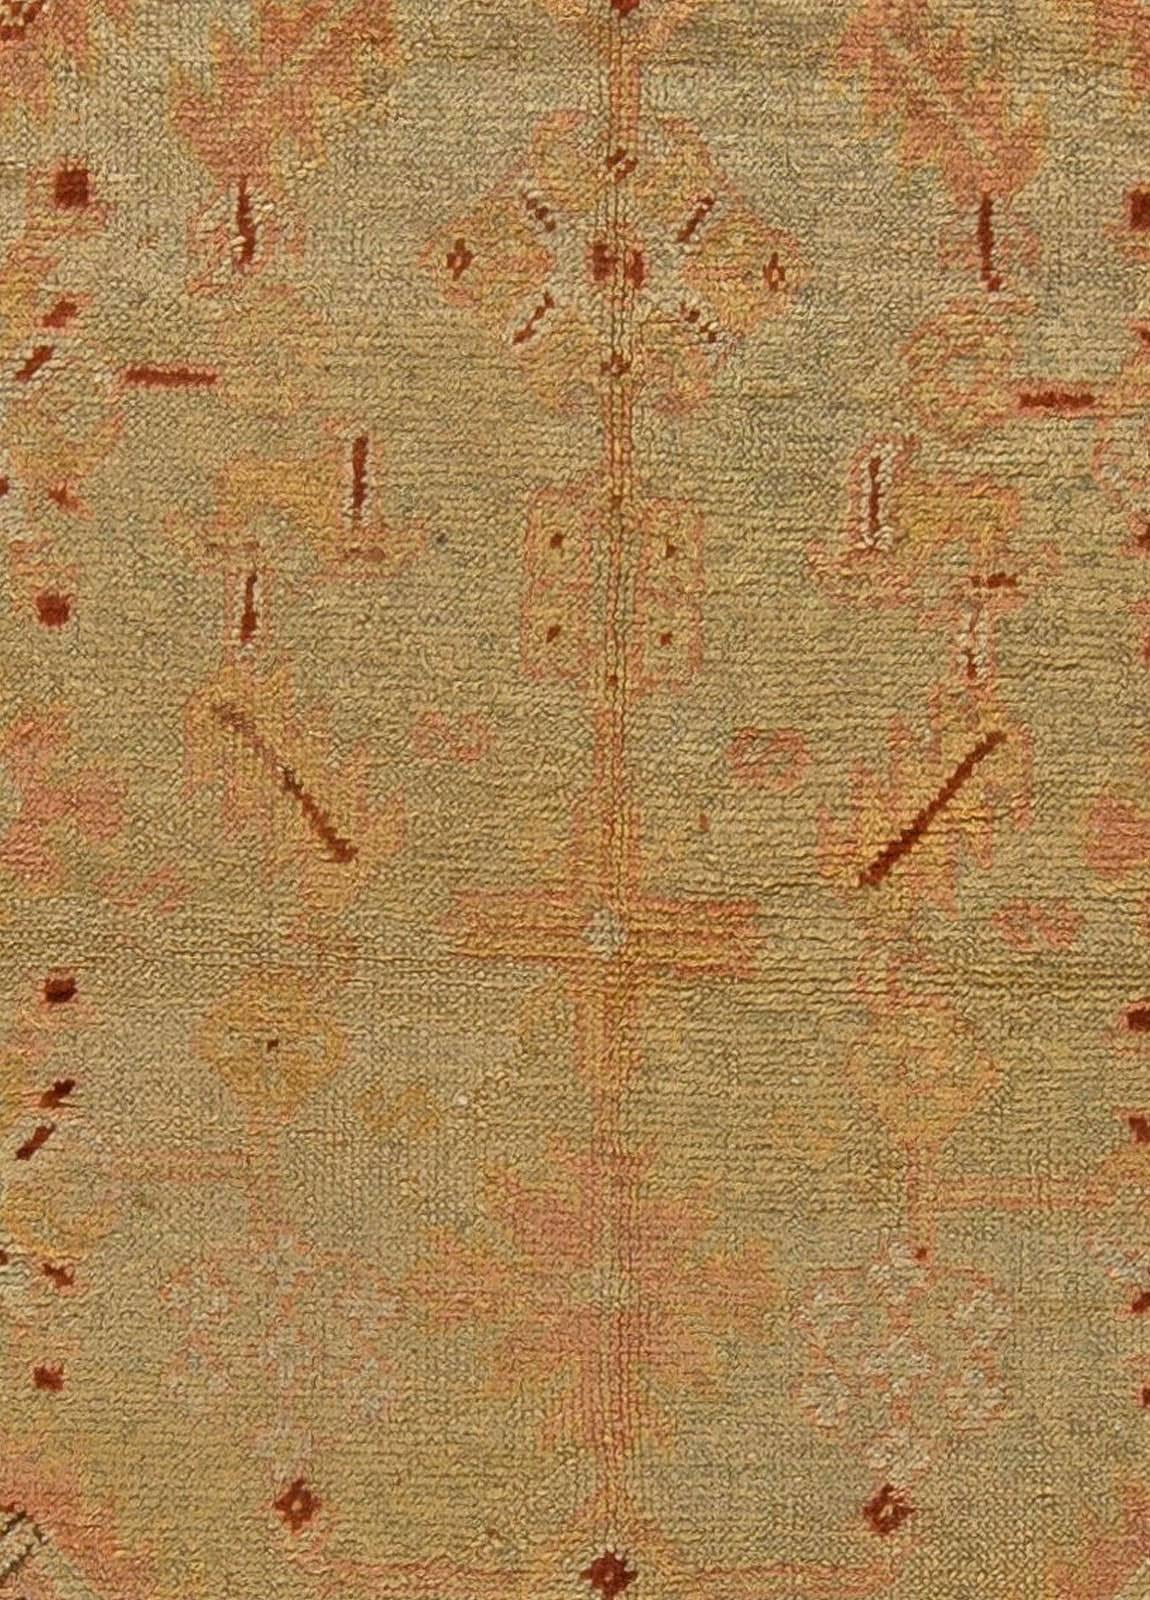 Tapis vintage en laine tissée à la main Oushak de Turquie, unique en son genre
Taille : 8'9